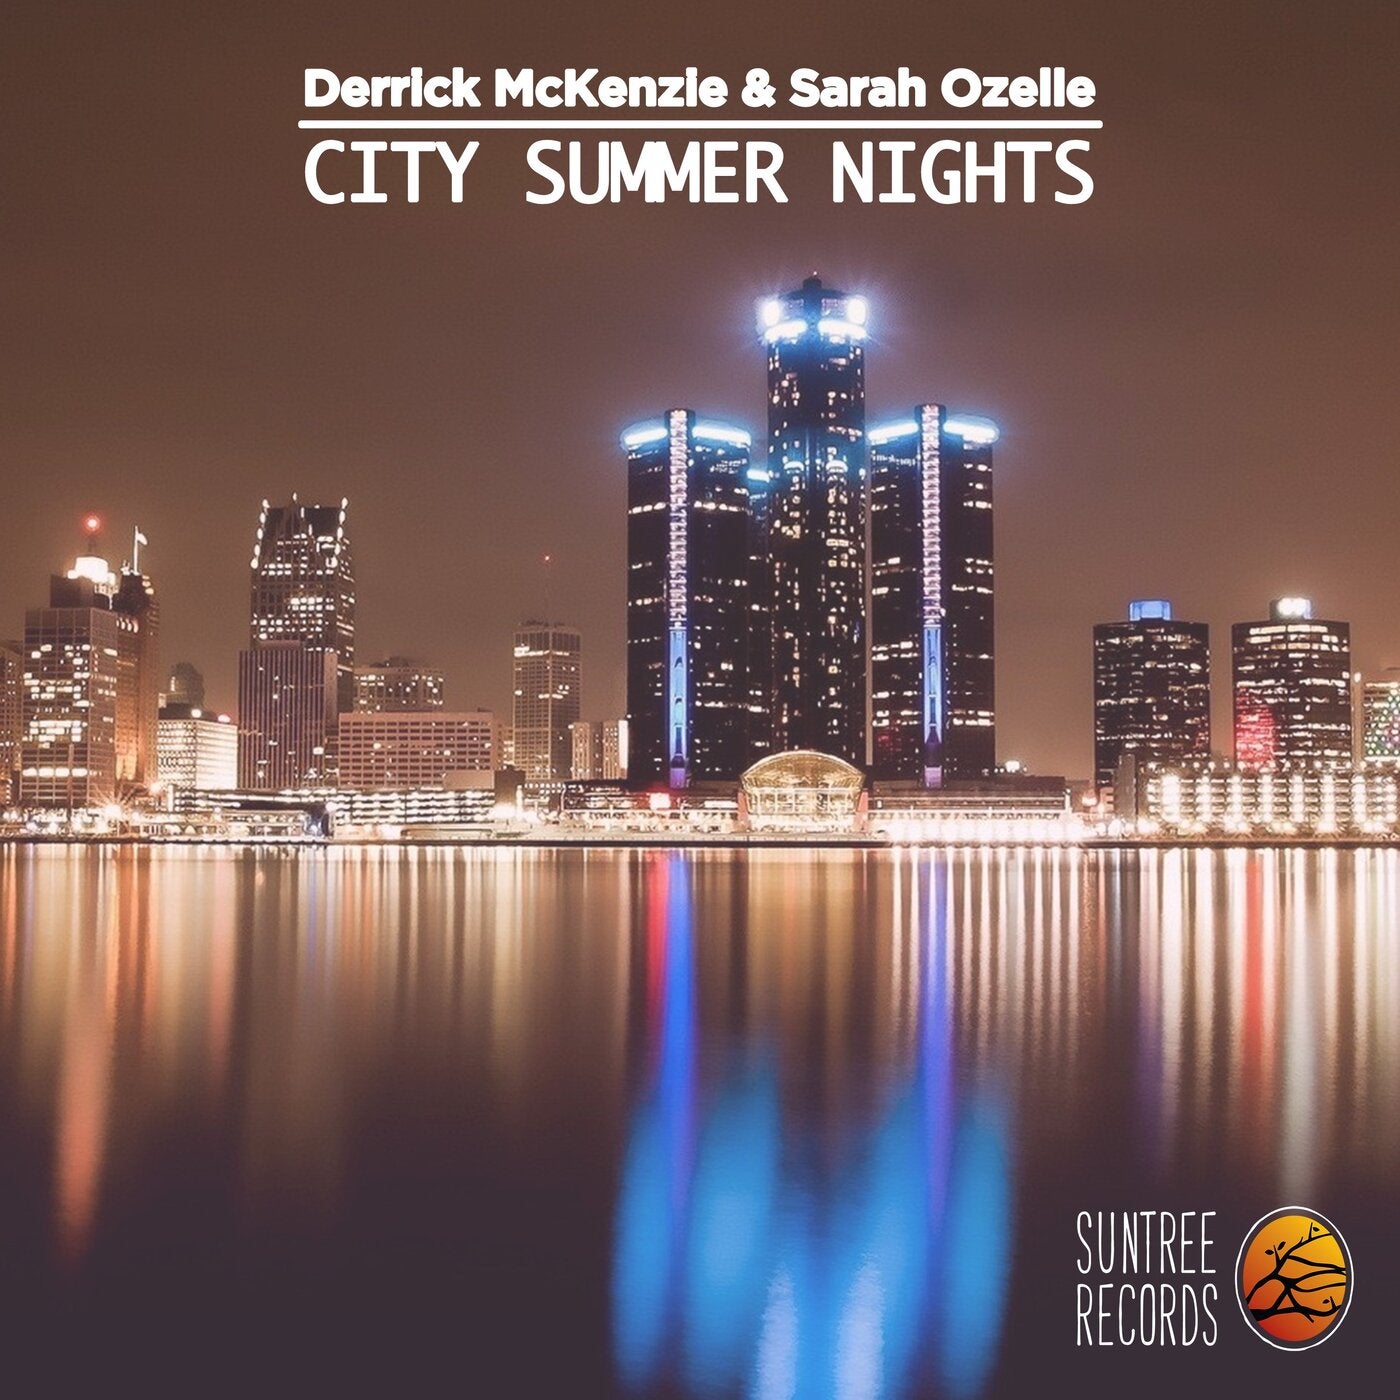 City Summer Nights